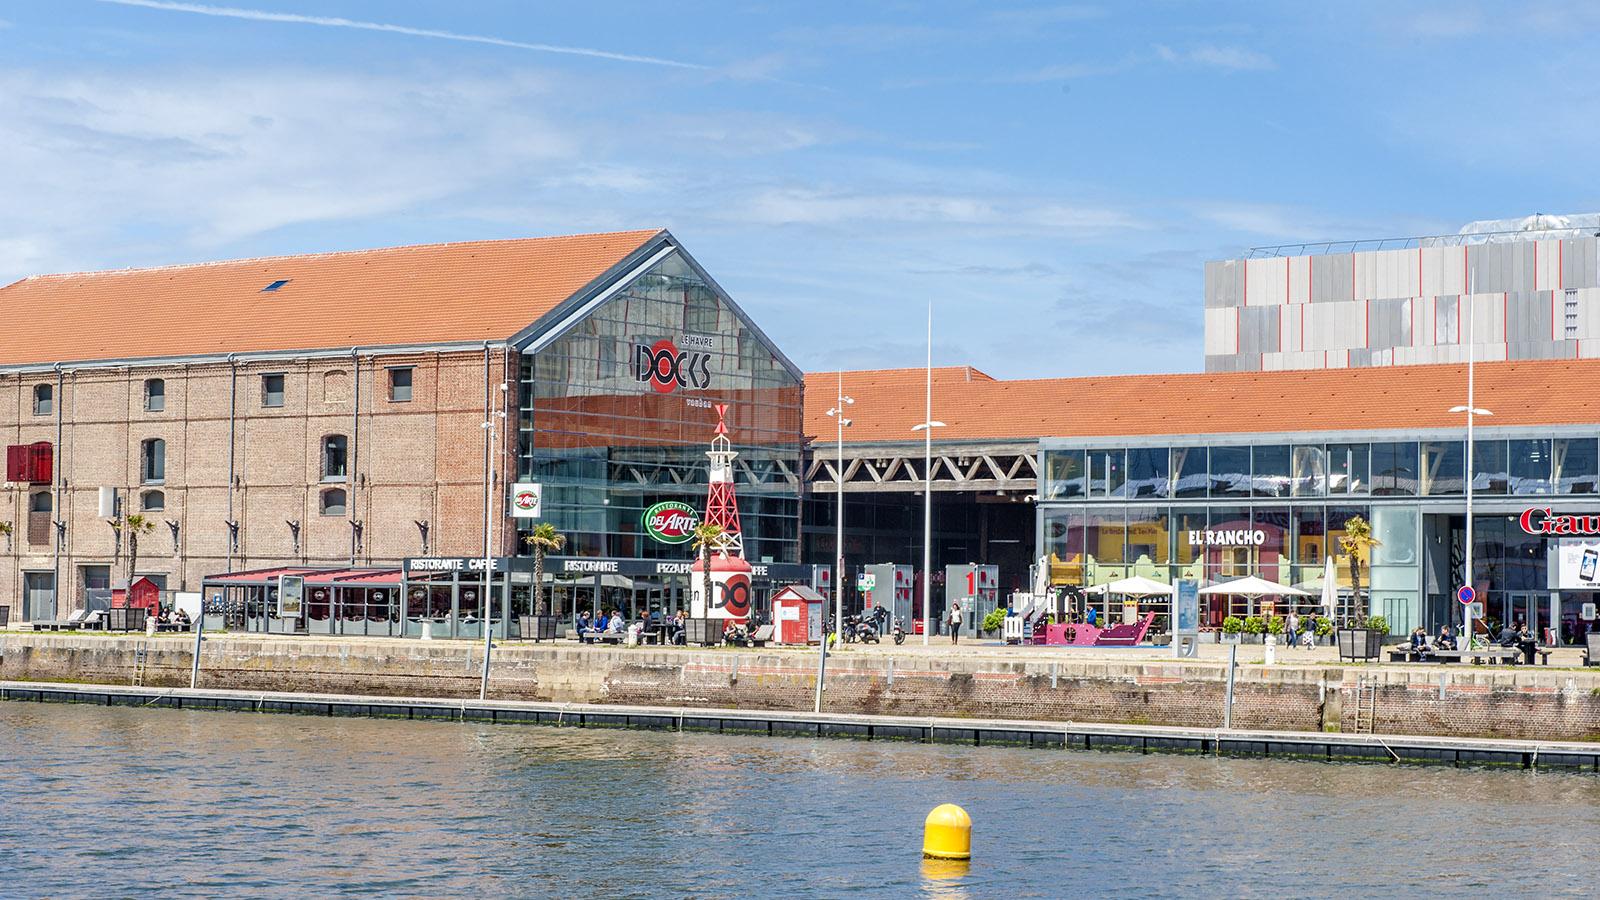 Das Shoppincenter Docks Vauban liegt direkt am Wasser. Foto: Hilke Maunder